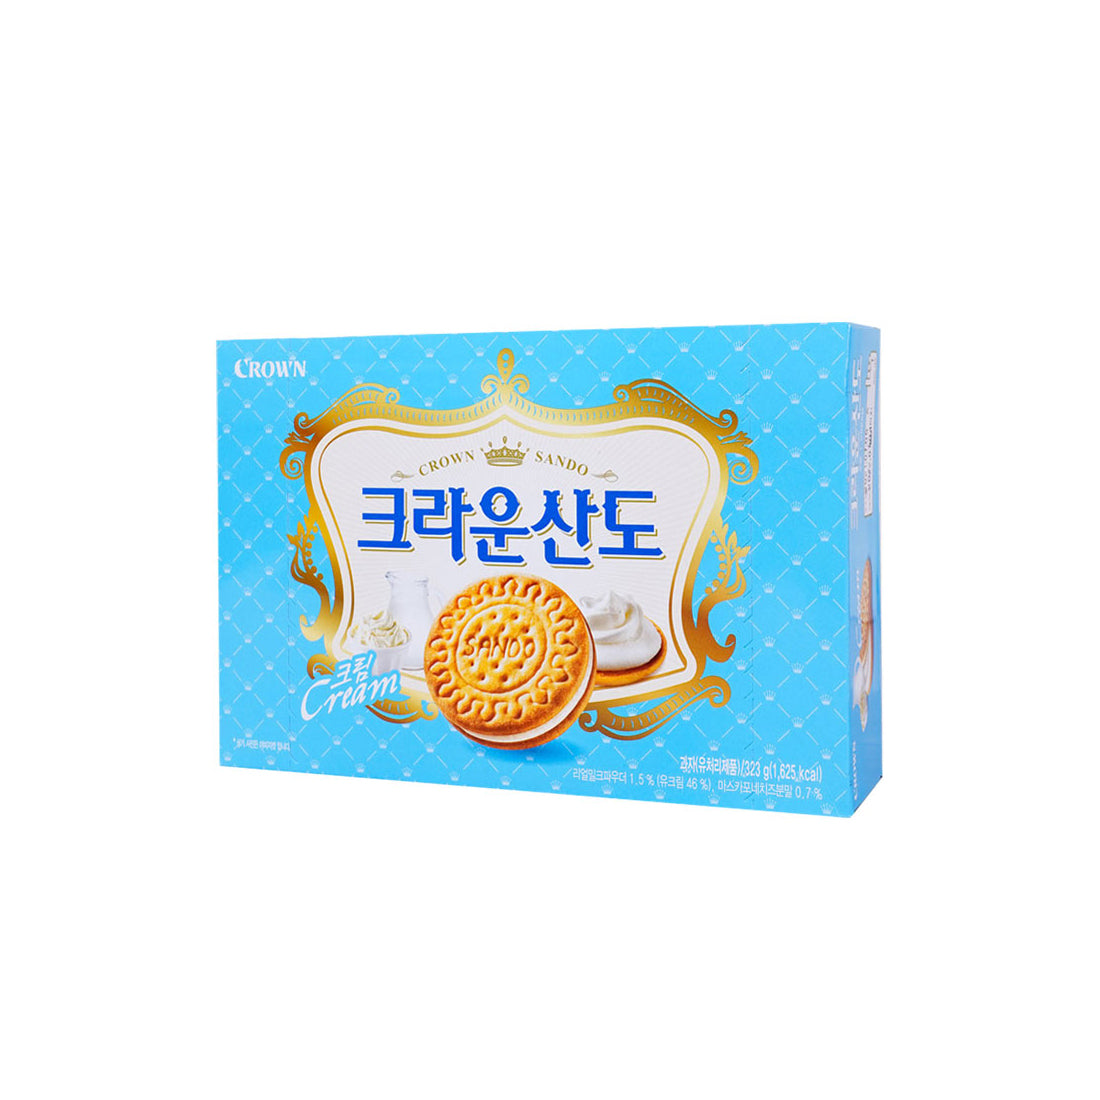 Sando(Cream)(L) 8/323g 산도(크림)